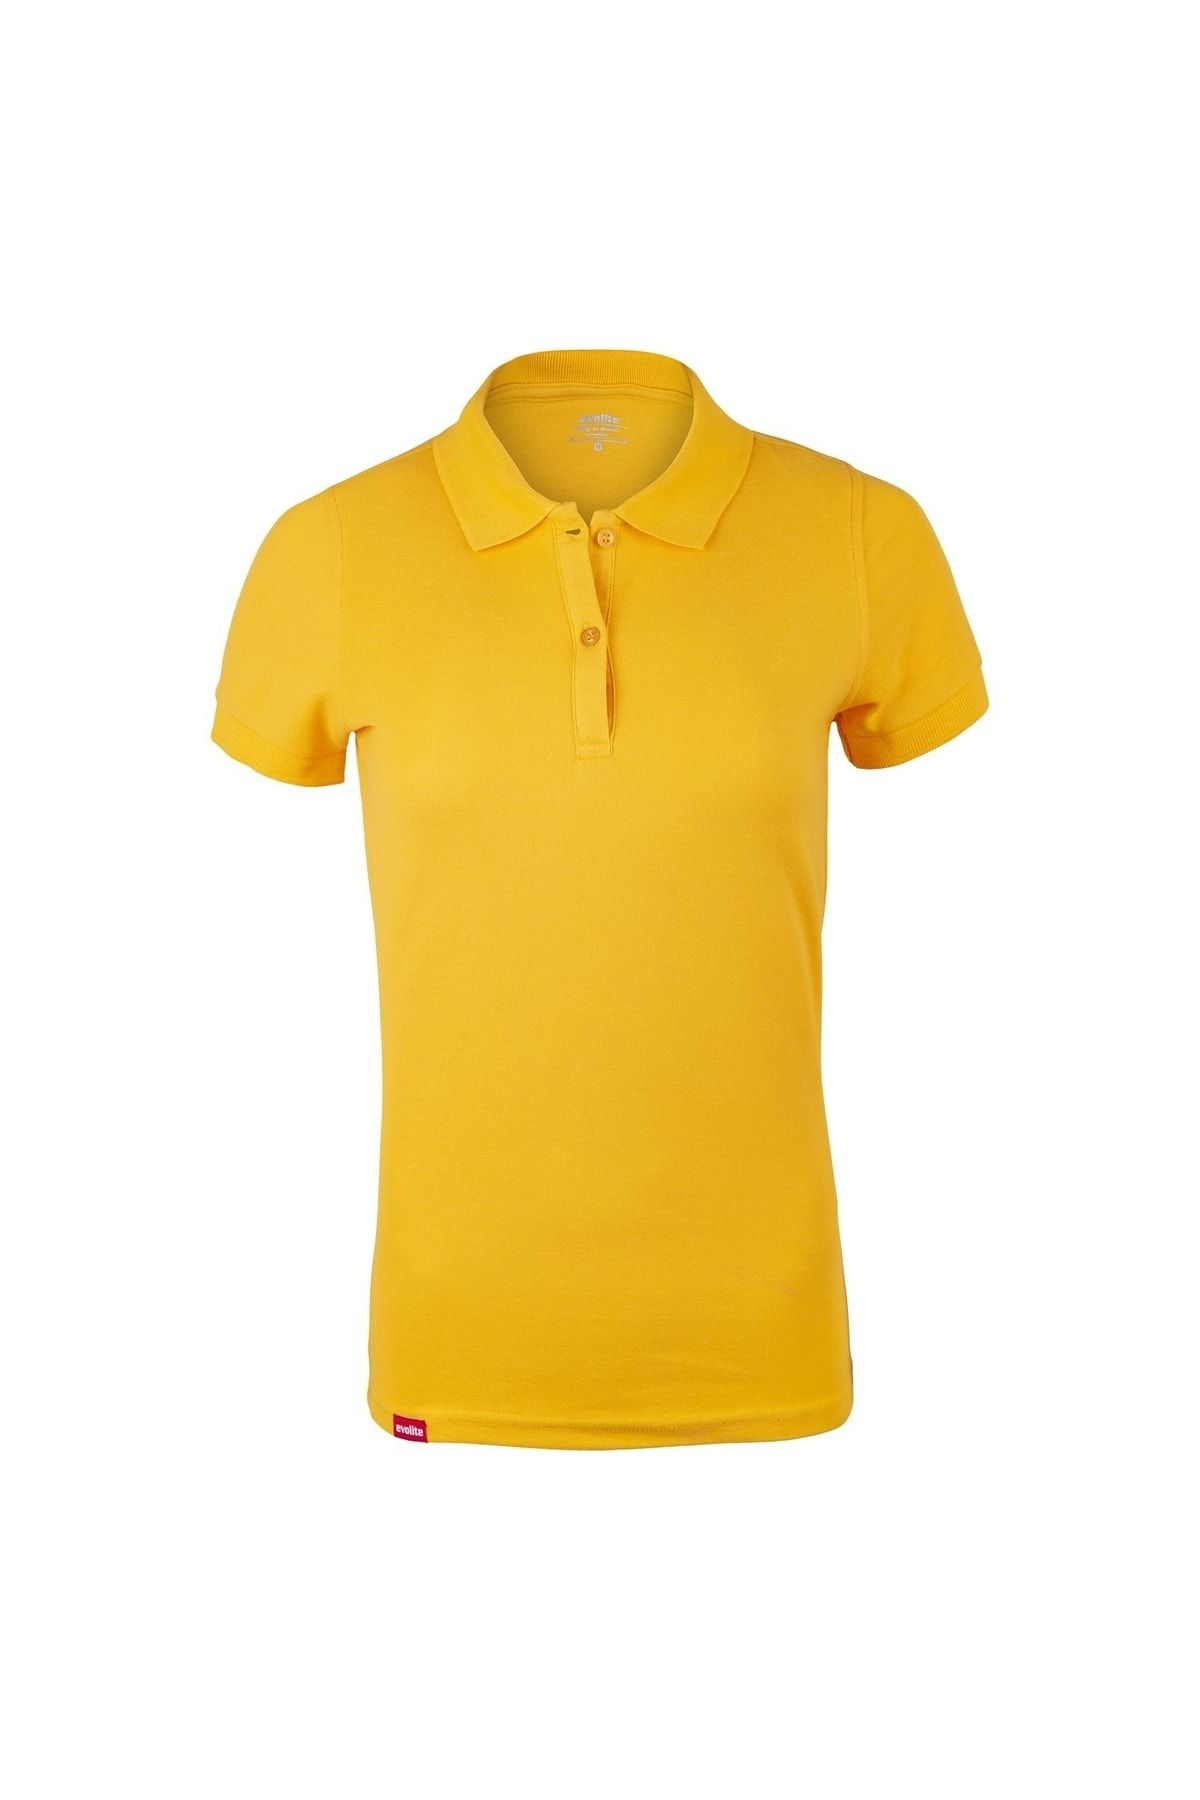 Evolite Deepraw Polo T-shirt - Sarı